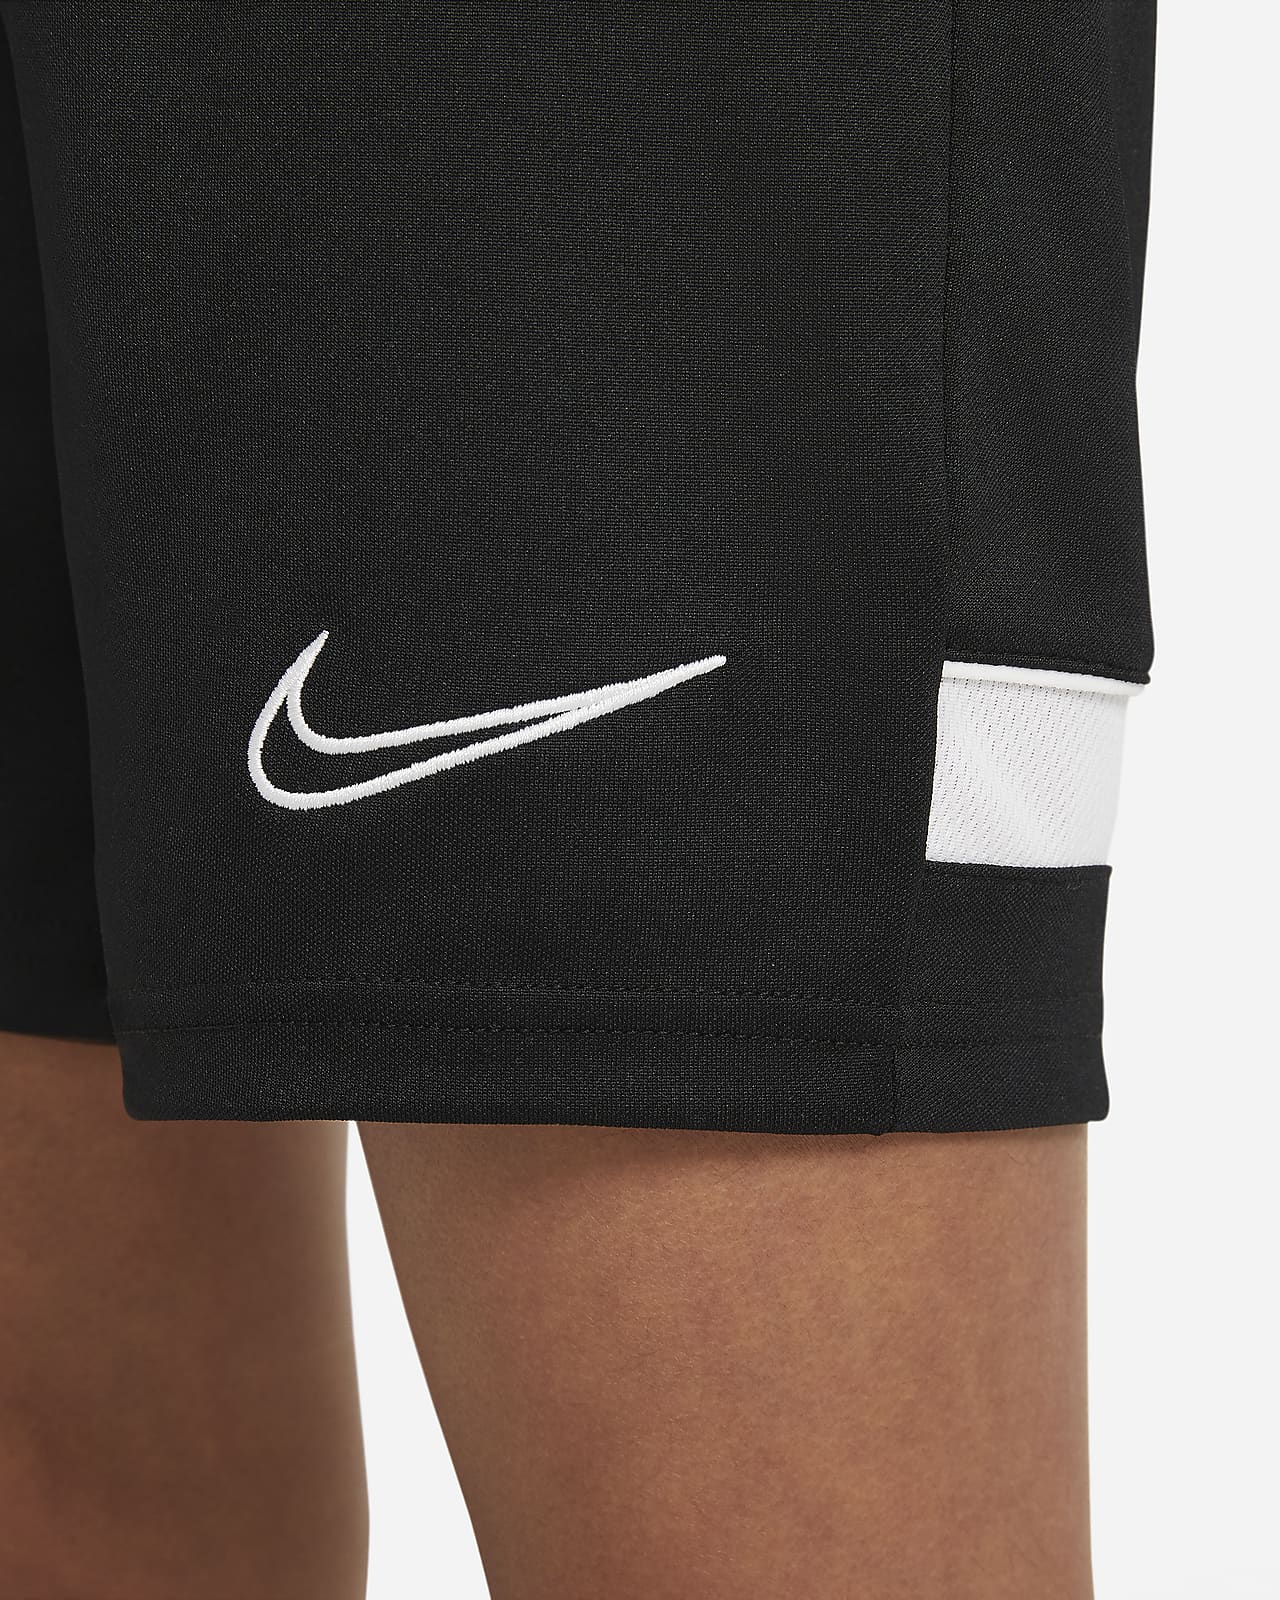 Nike公式 ナイキ Dri Fit アカデミー ジュニア ニット サッカーショートパンツ オンラインストア 通販サイト